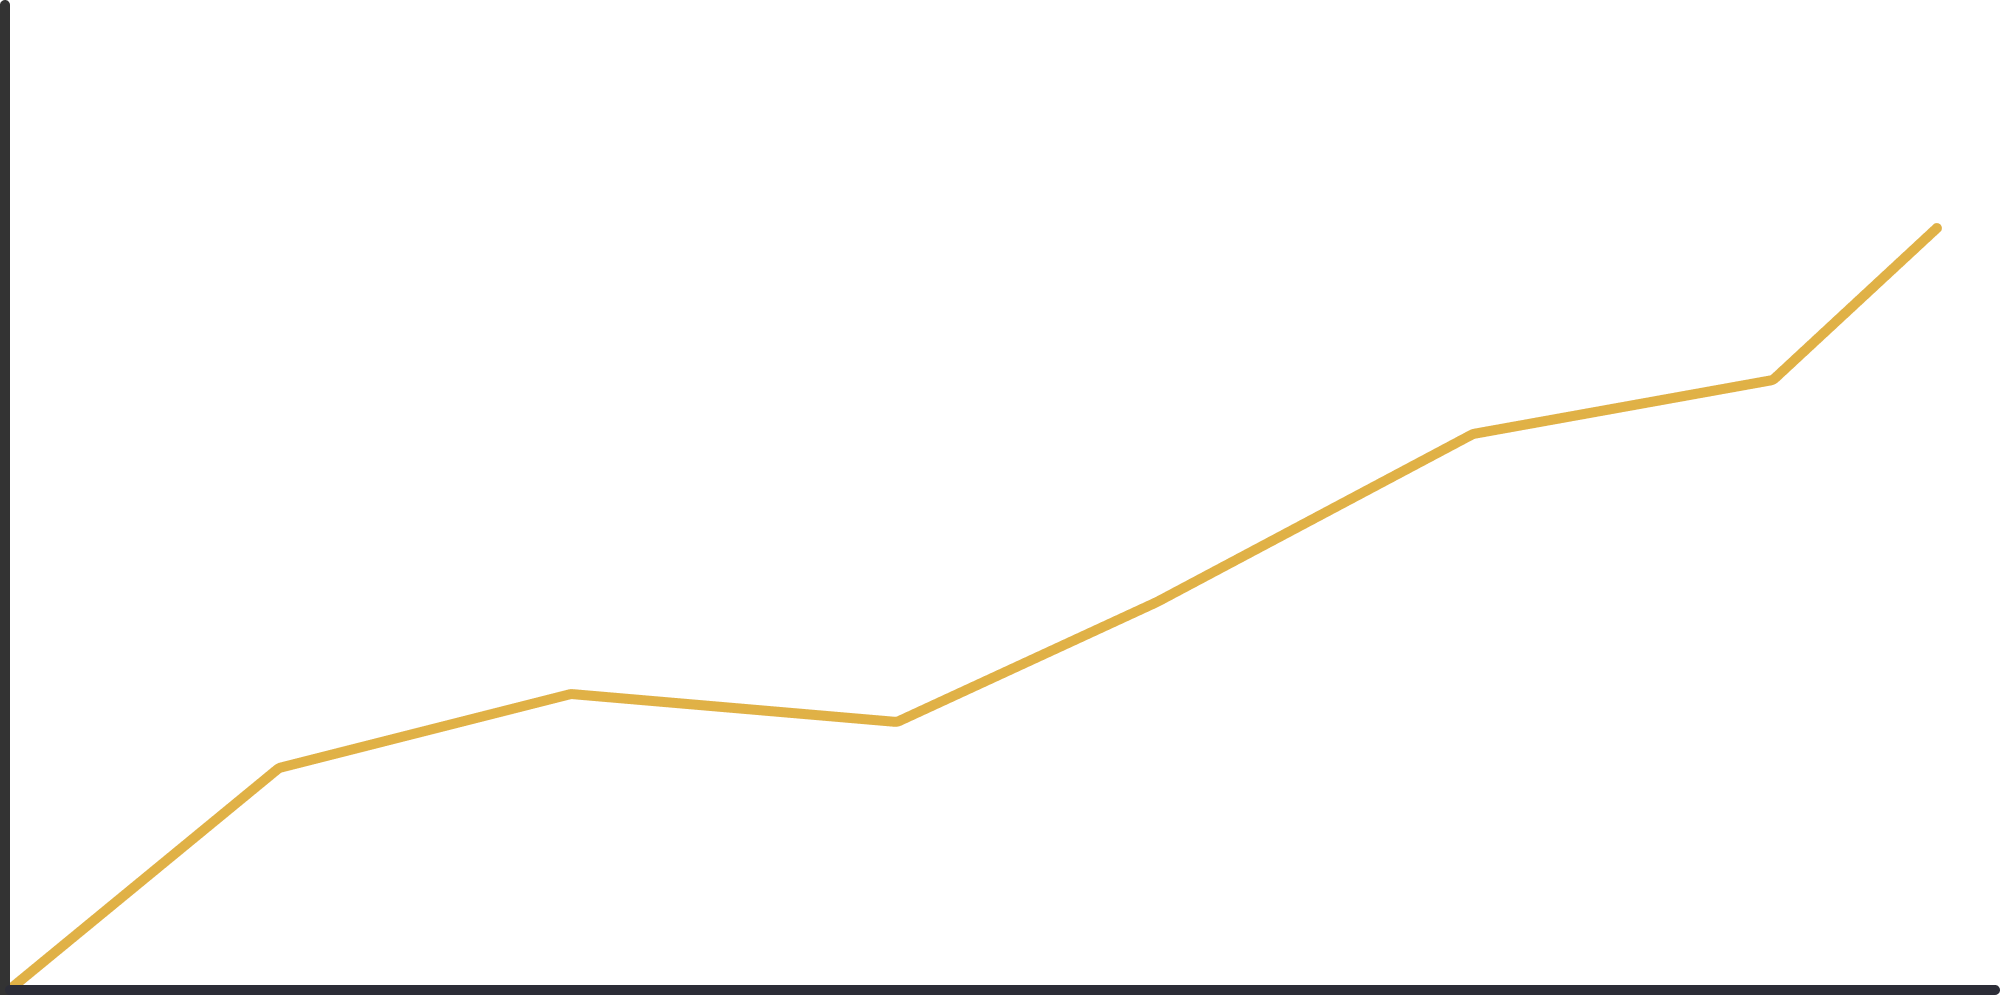 Line graph showing improvements